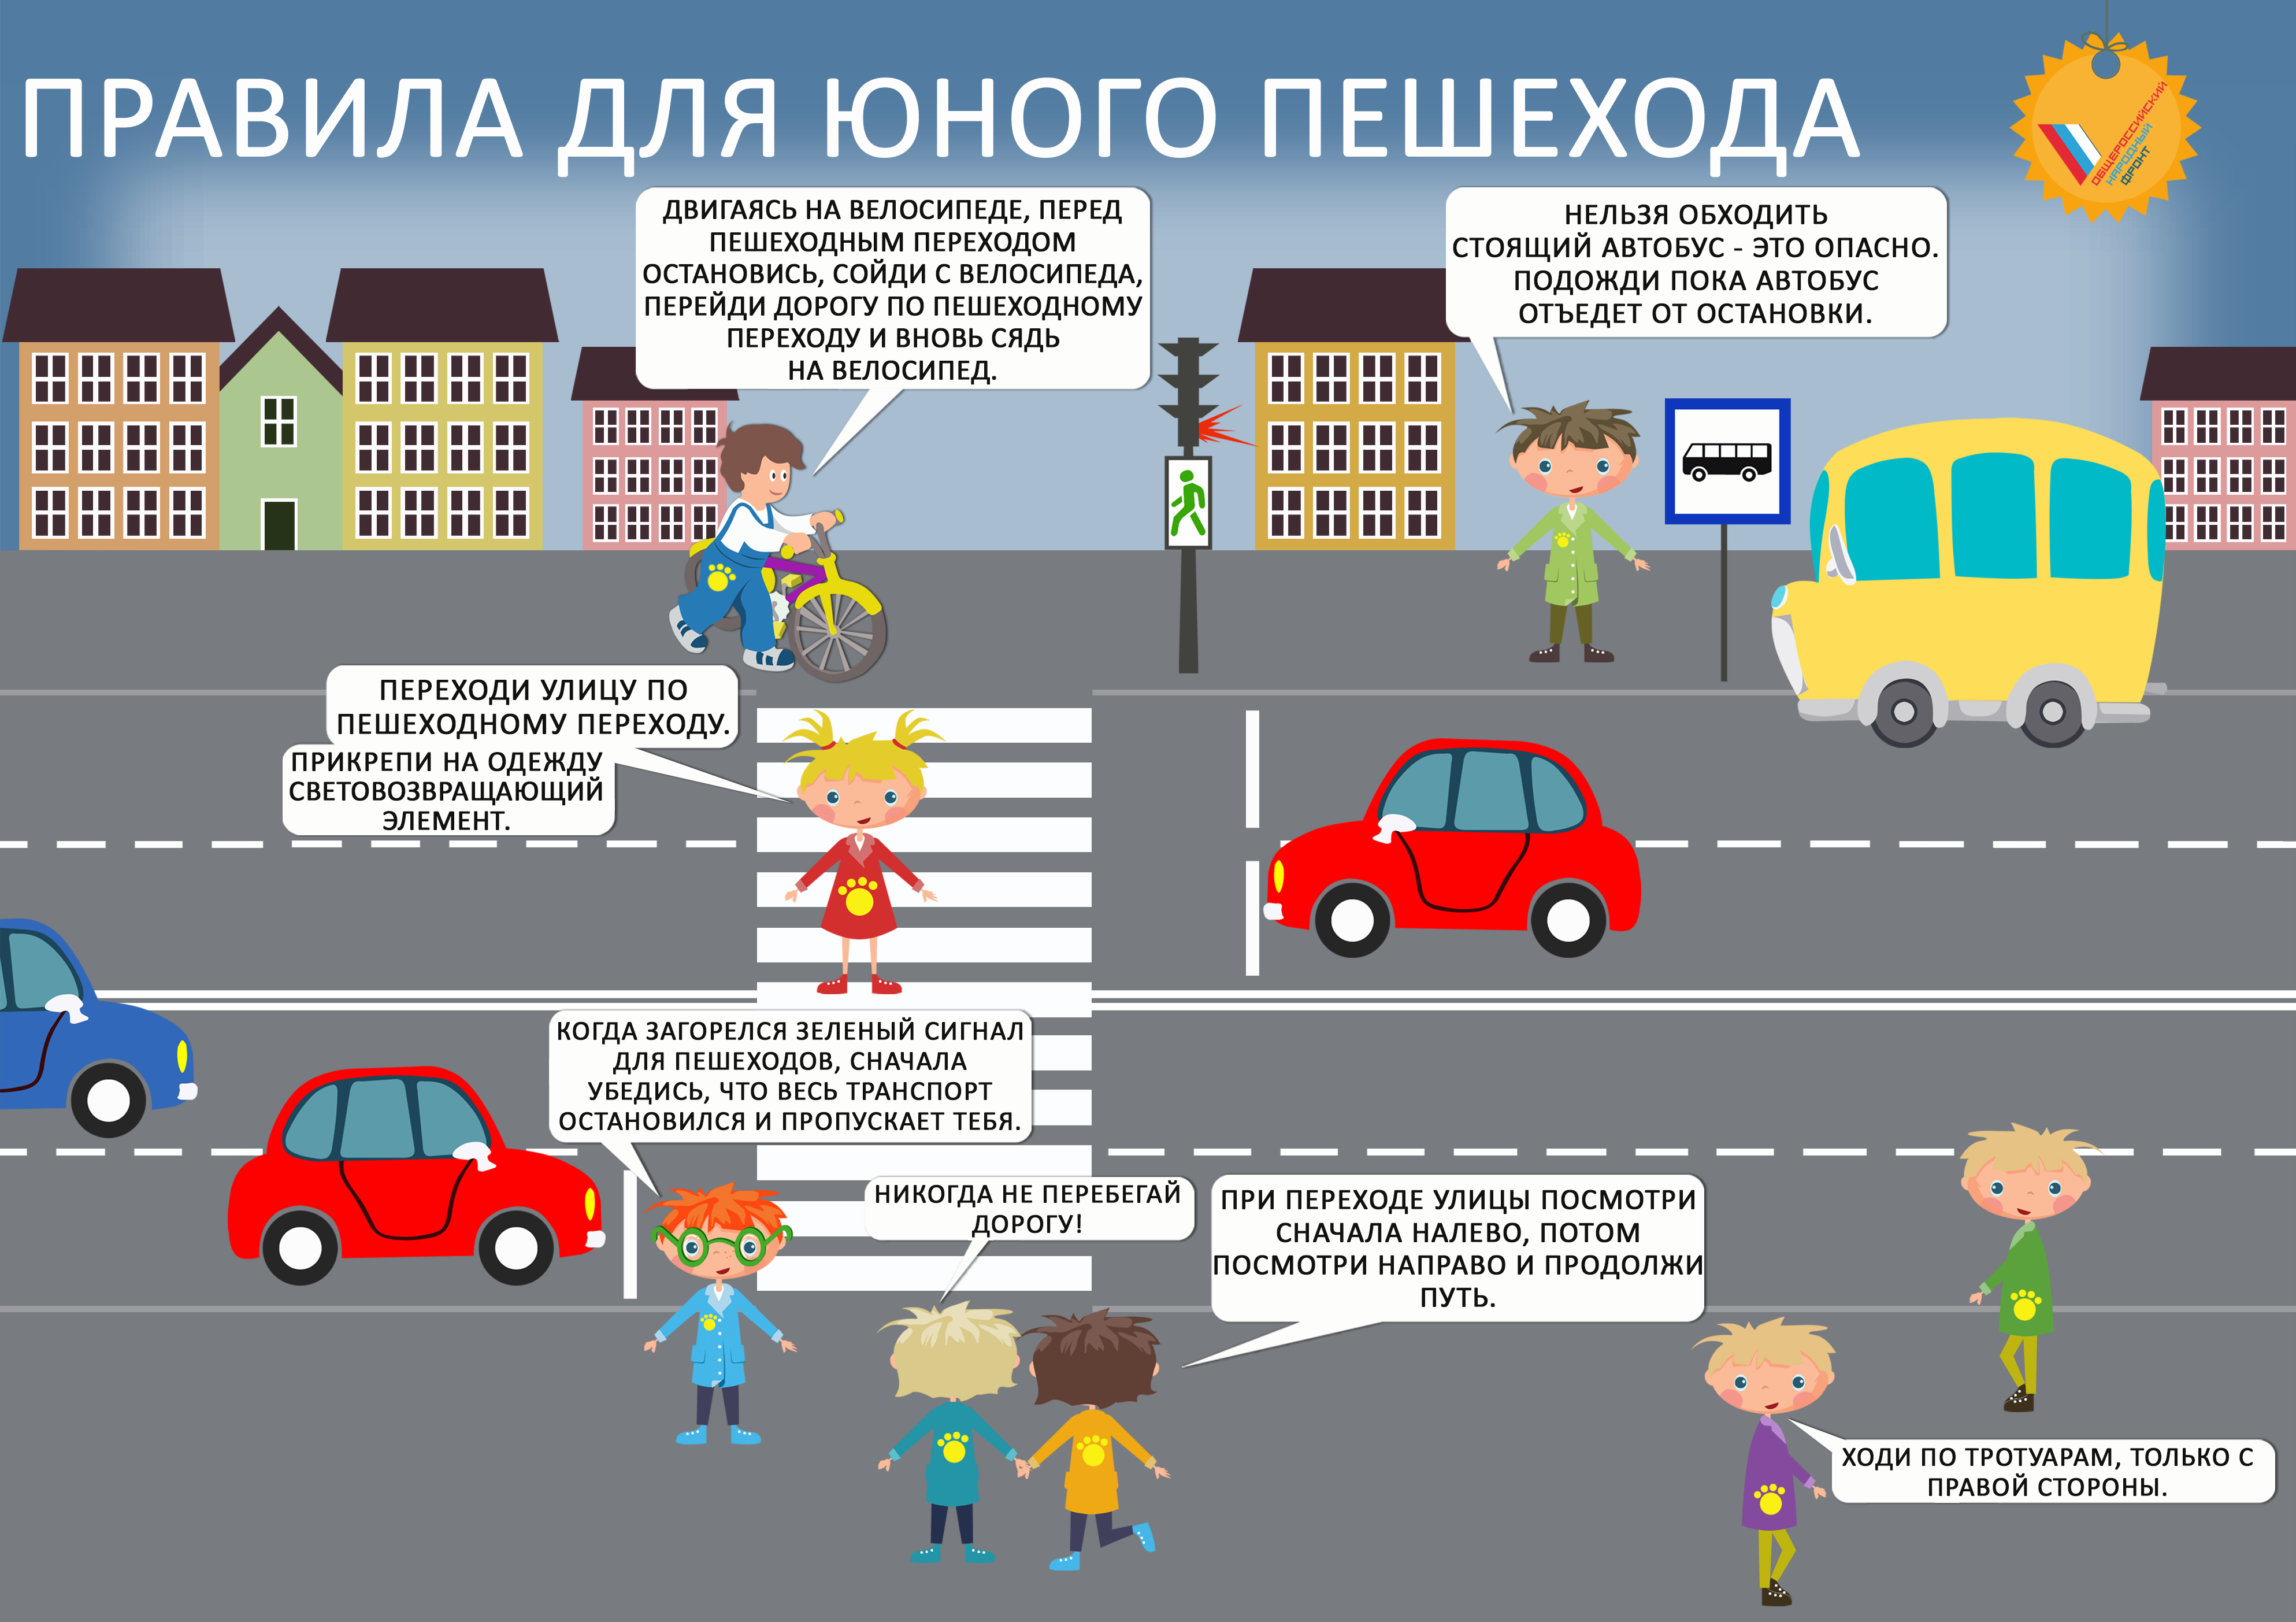 10 вопросов по безопасности. Правила дорожного движения для детей. Правила дорожного движения для пешеходов. Правила дорожного движения для пешеходов для детей. Правило дорожного движения для детей.